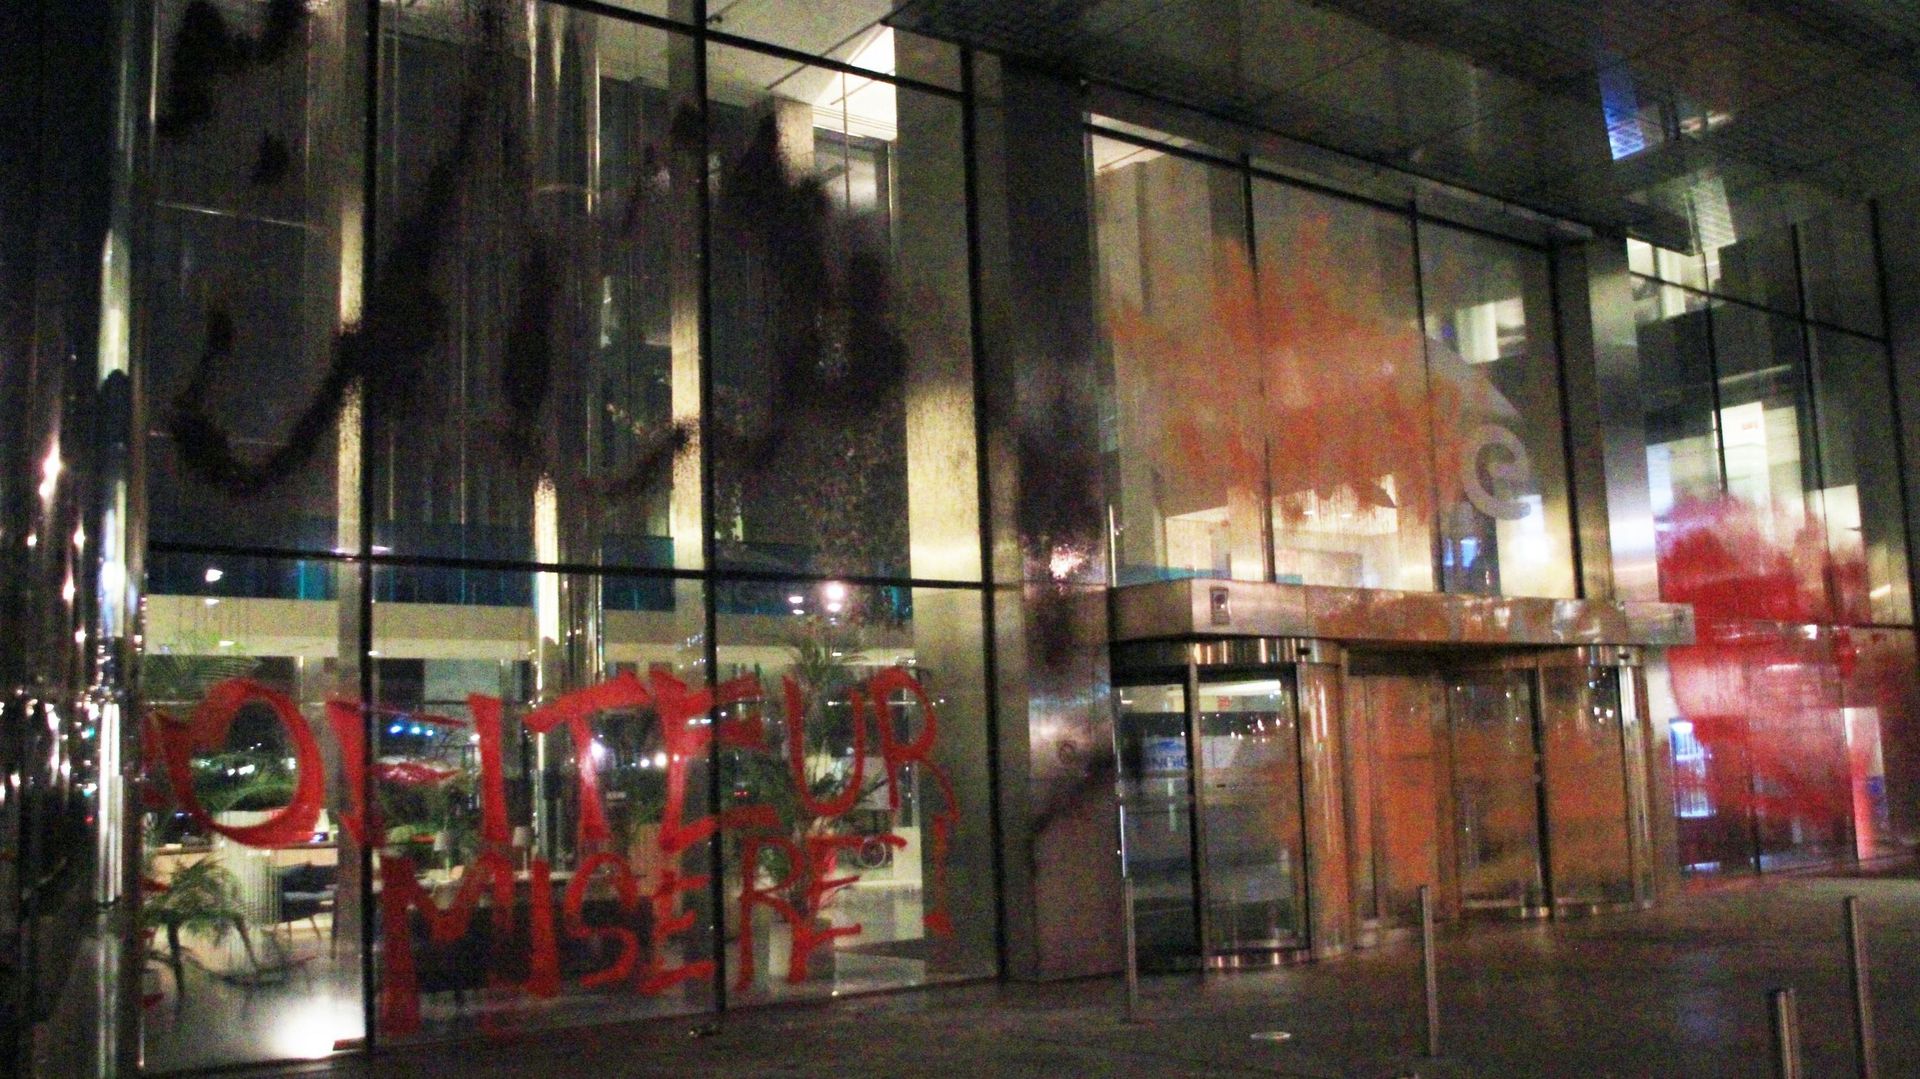 Le siège d’Engie, Boulevard Simon Bolivar à Bruxelles (photo transmise par le groupe Etoile Noire).